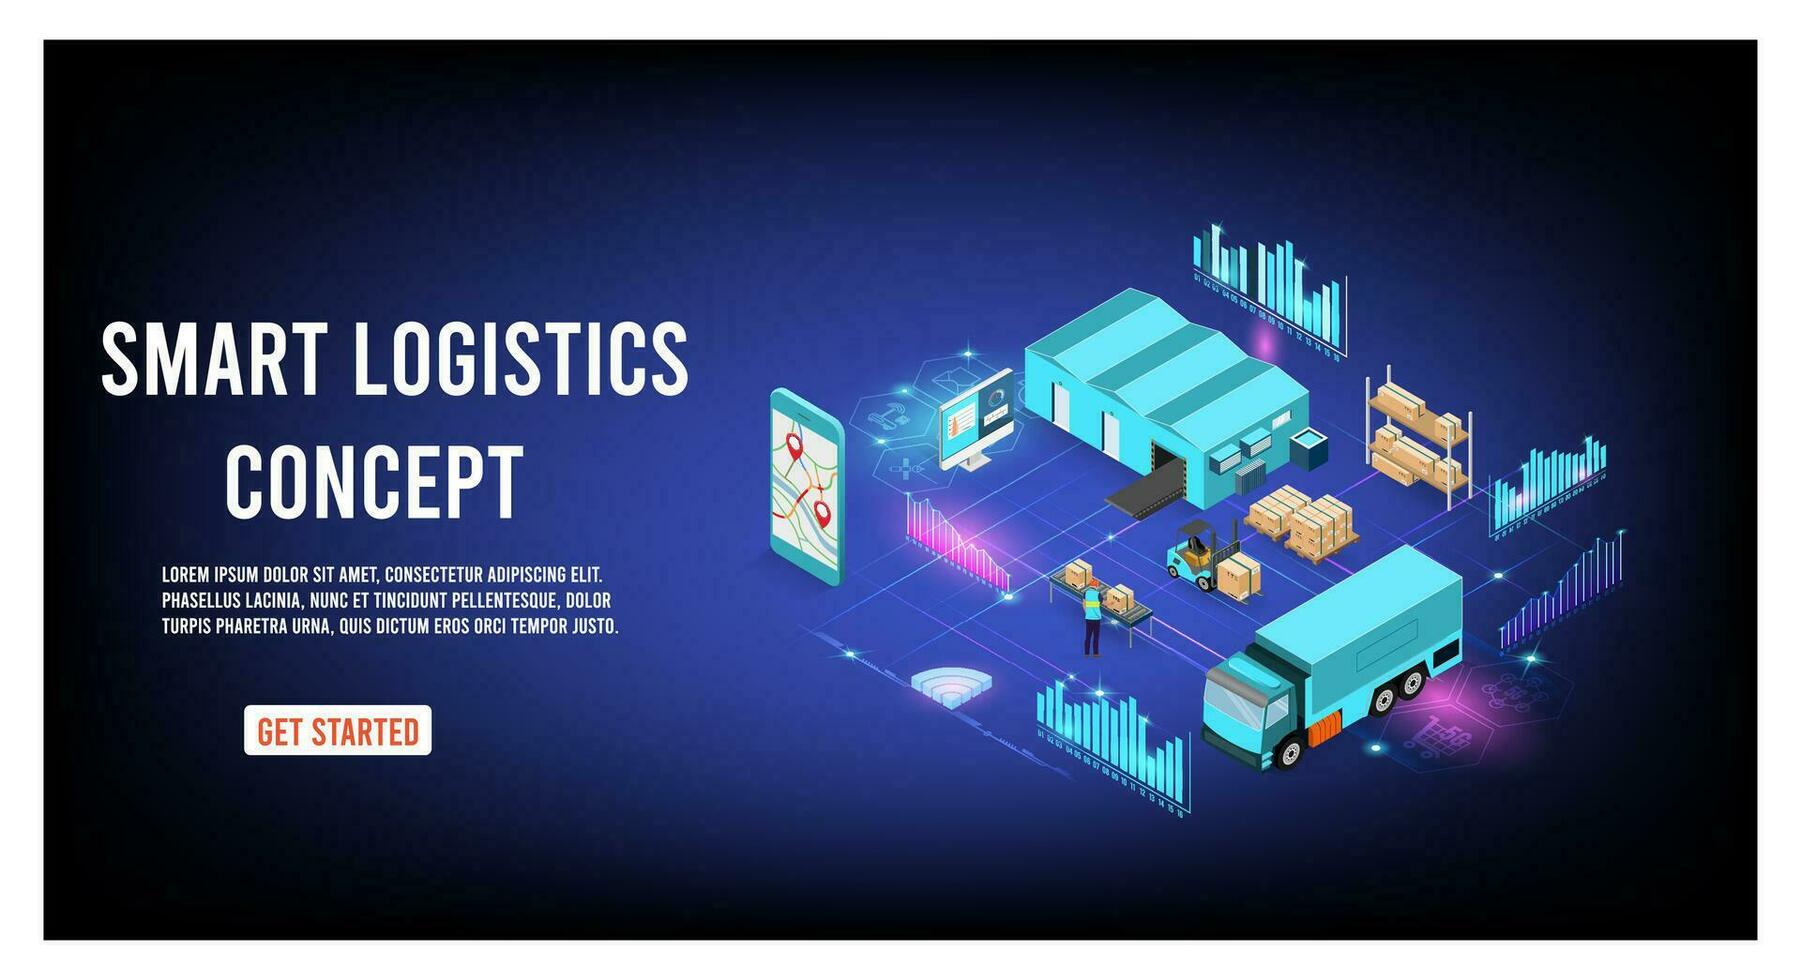 modern global logistisk service begrepp med exportera, importera, lager företag, transport. vektor illustration eps 10